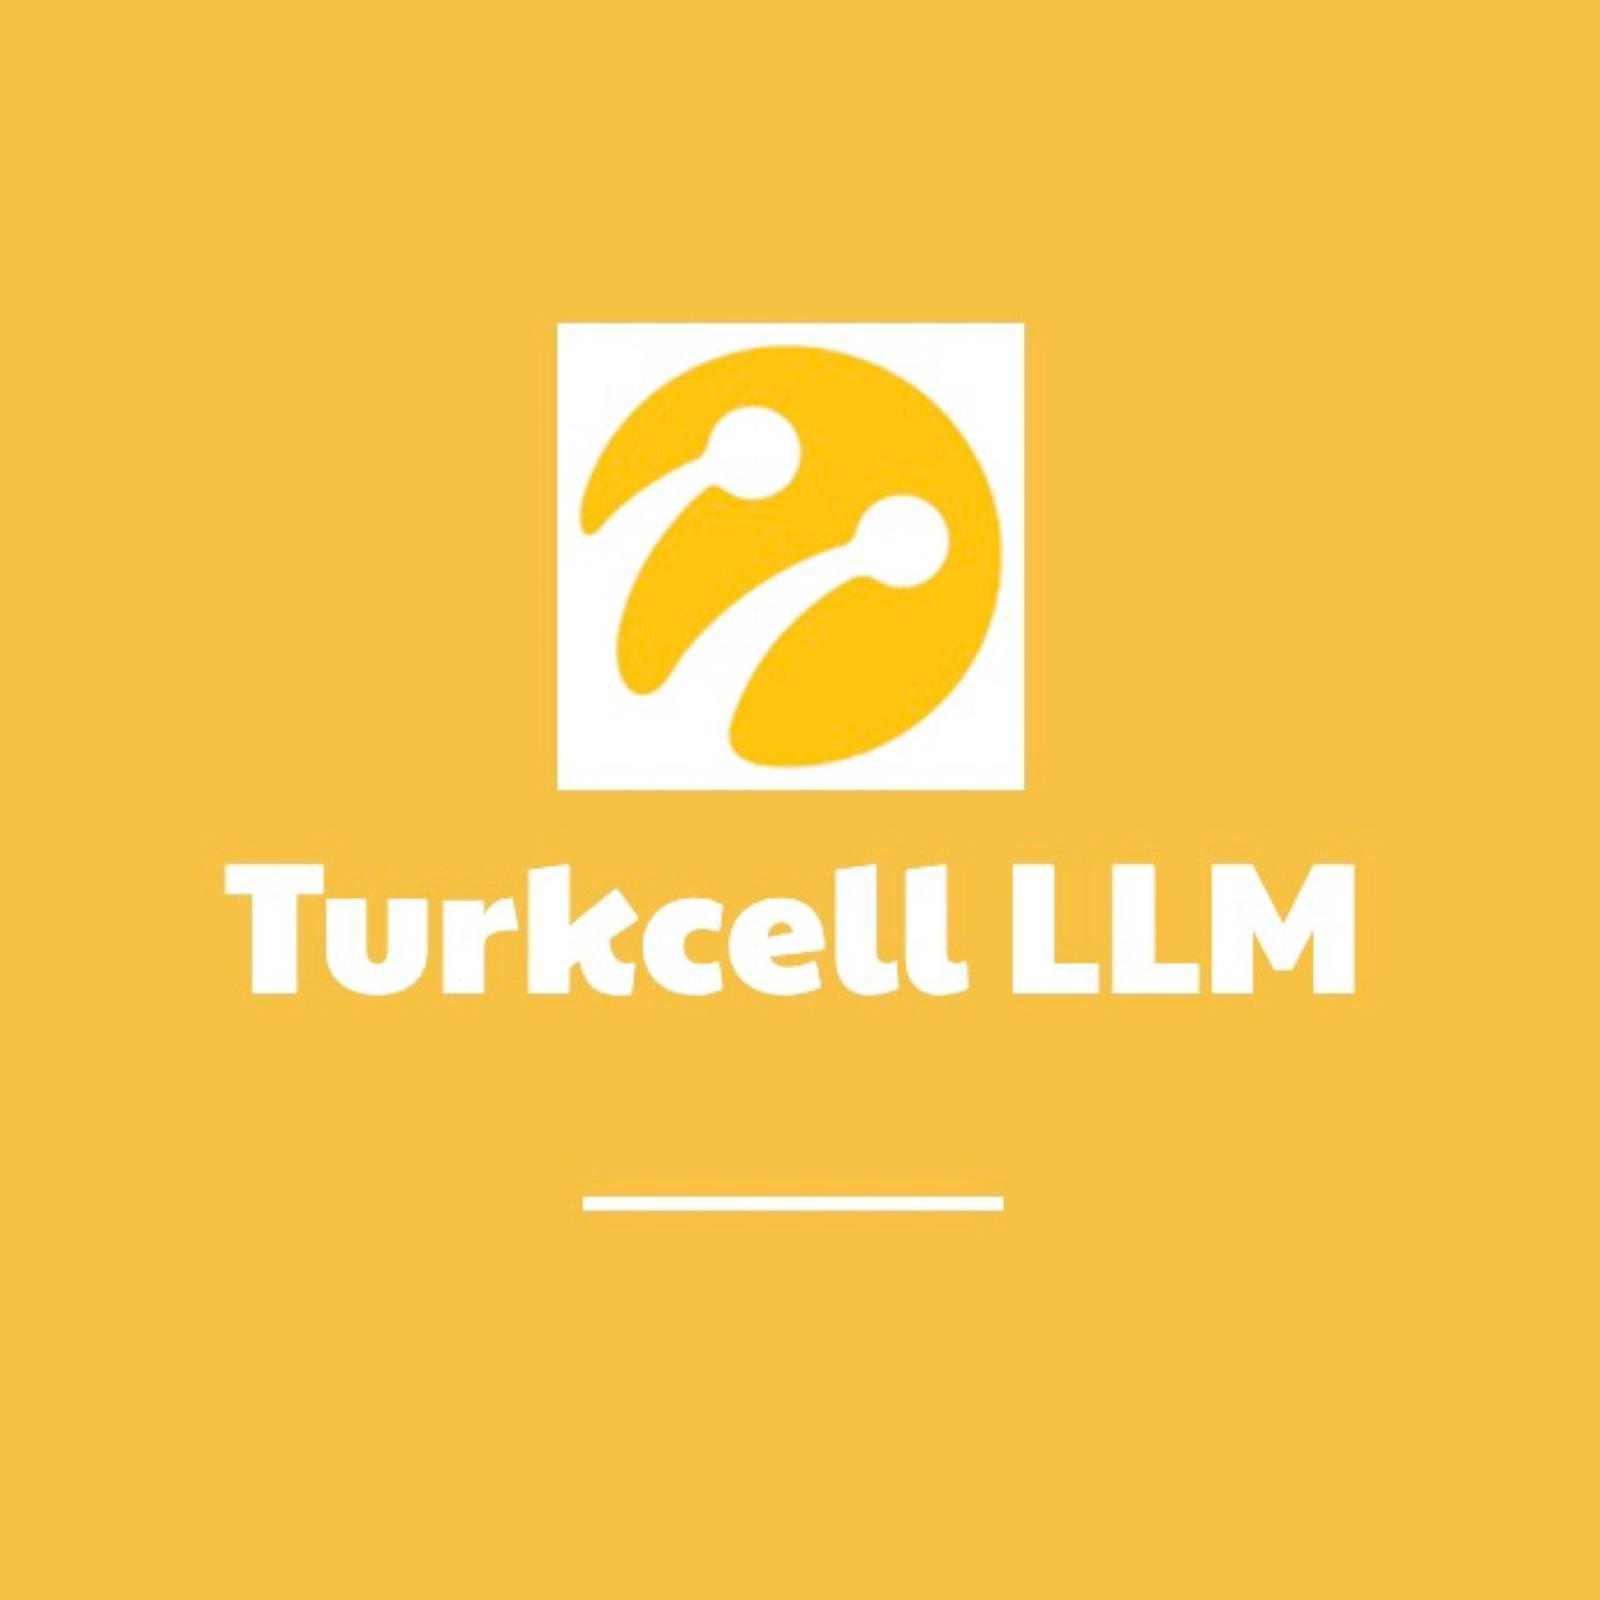 Turkcell LLM